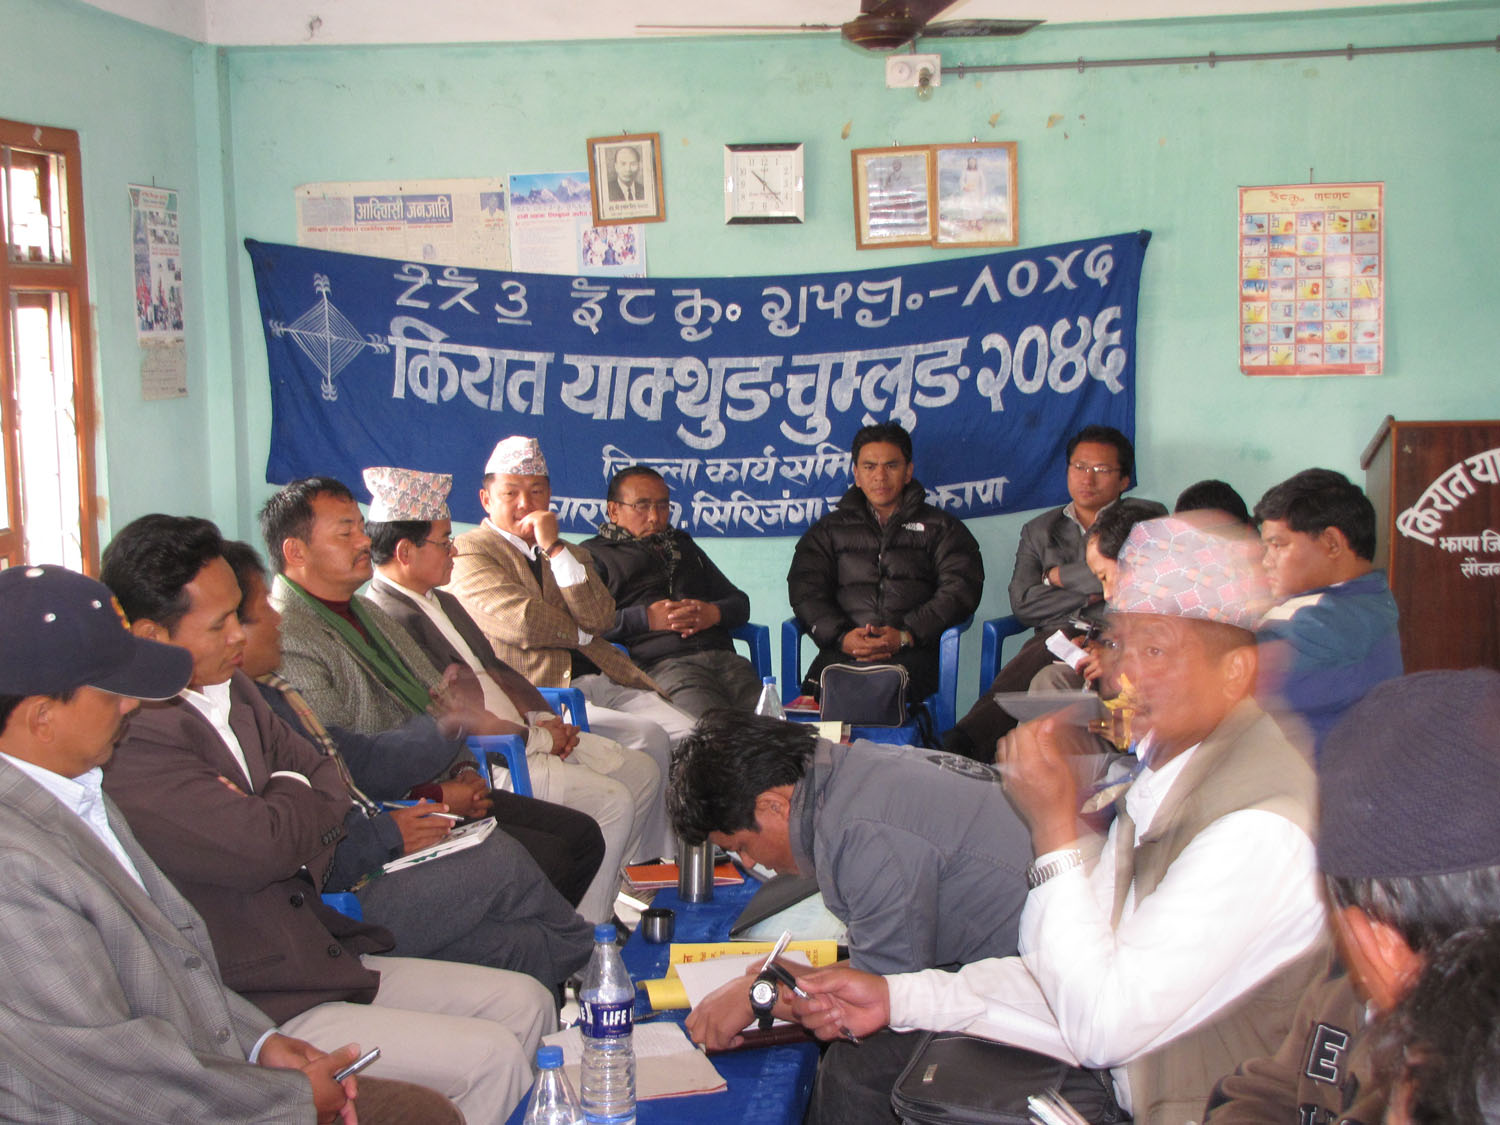 [Spec_Meeting_of_United_Limbuwan_Front,_Nepal_at_Birtamod_Jhapa_Limbuwan.jpg]